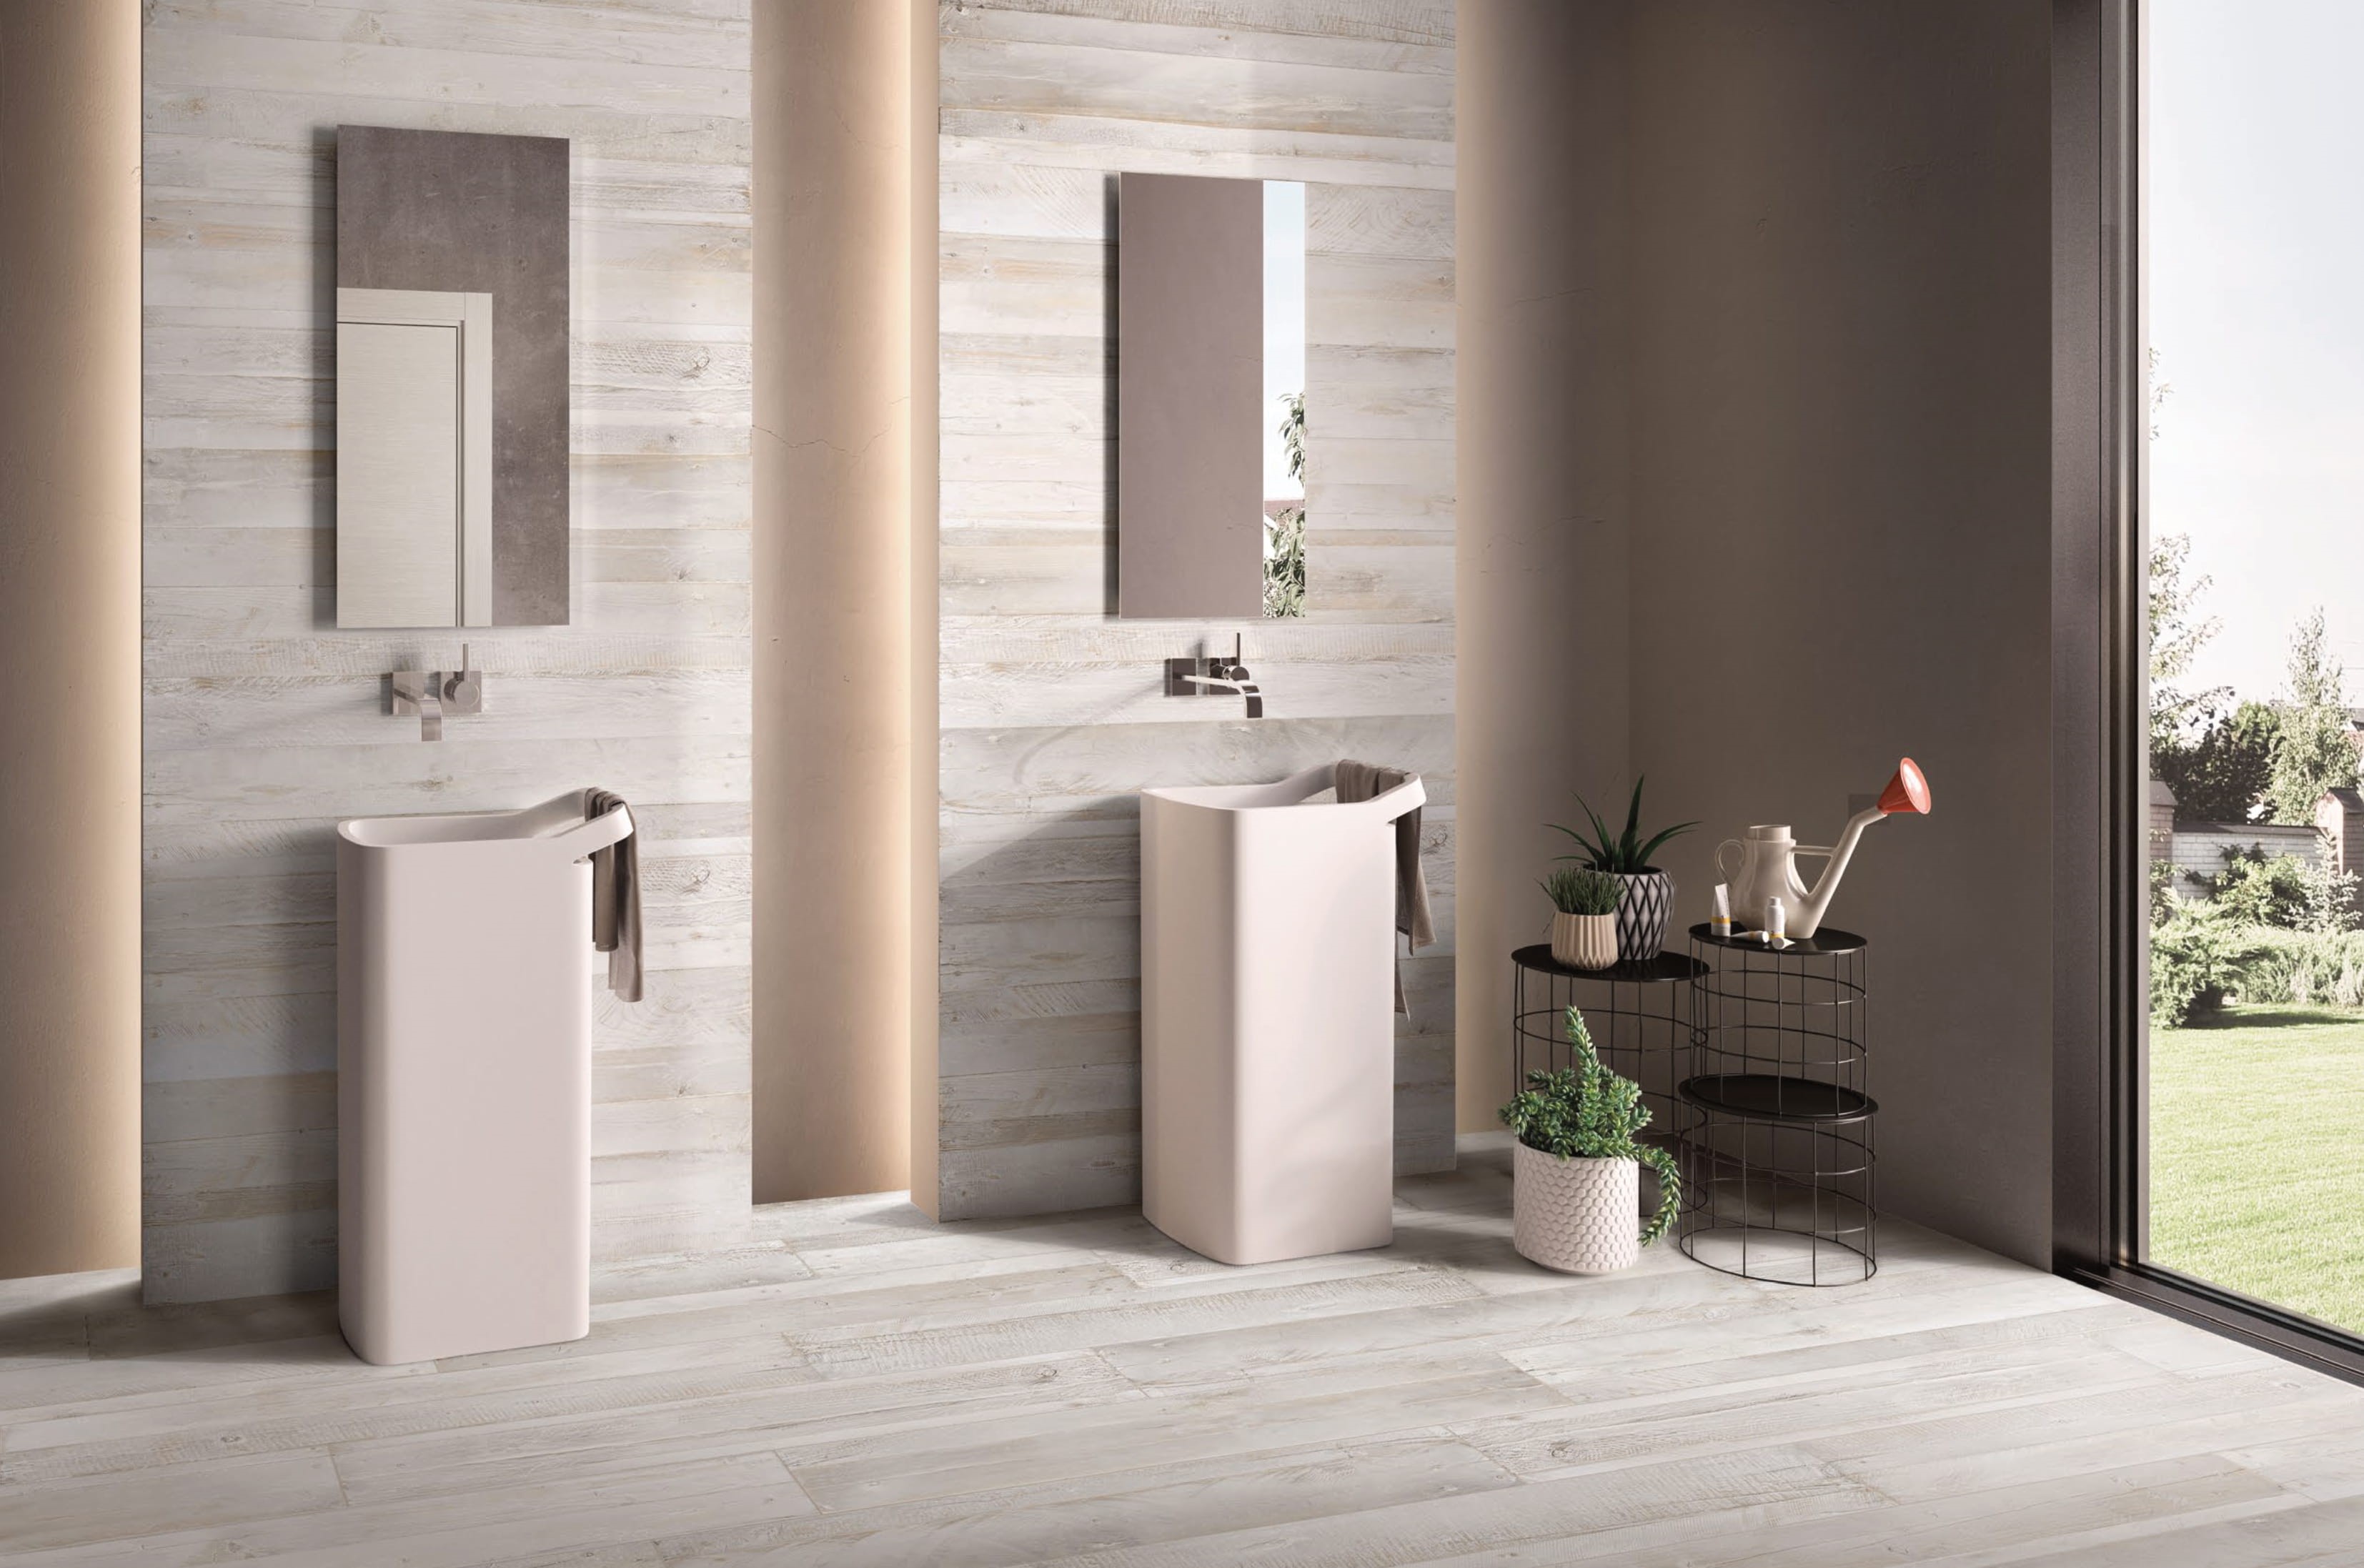 Minimalistyczna łazienka wyłożona białymi płytkami drewnopodobnymi z dwiema umywalkami stojącymi, dwoma lustrami i kwiatkami